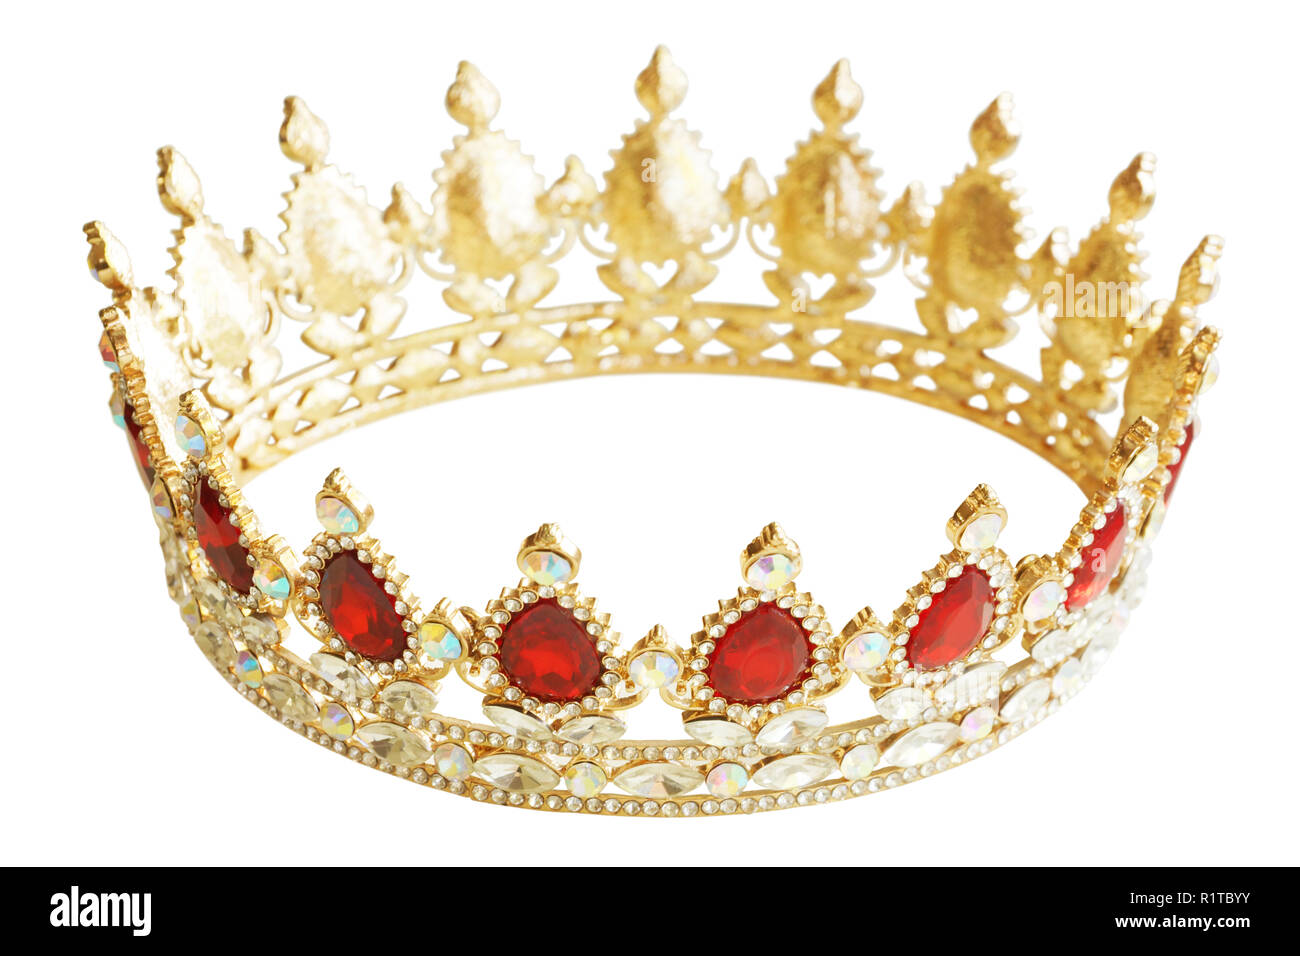 Corona de oro con diamantes de color rojo y blanco. Tiara de oro para la  princesa. Joyas caras. Decoración para el rey o la reina, magia crown  aislado en blanco Fotografía de